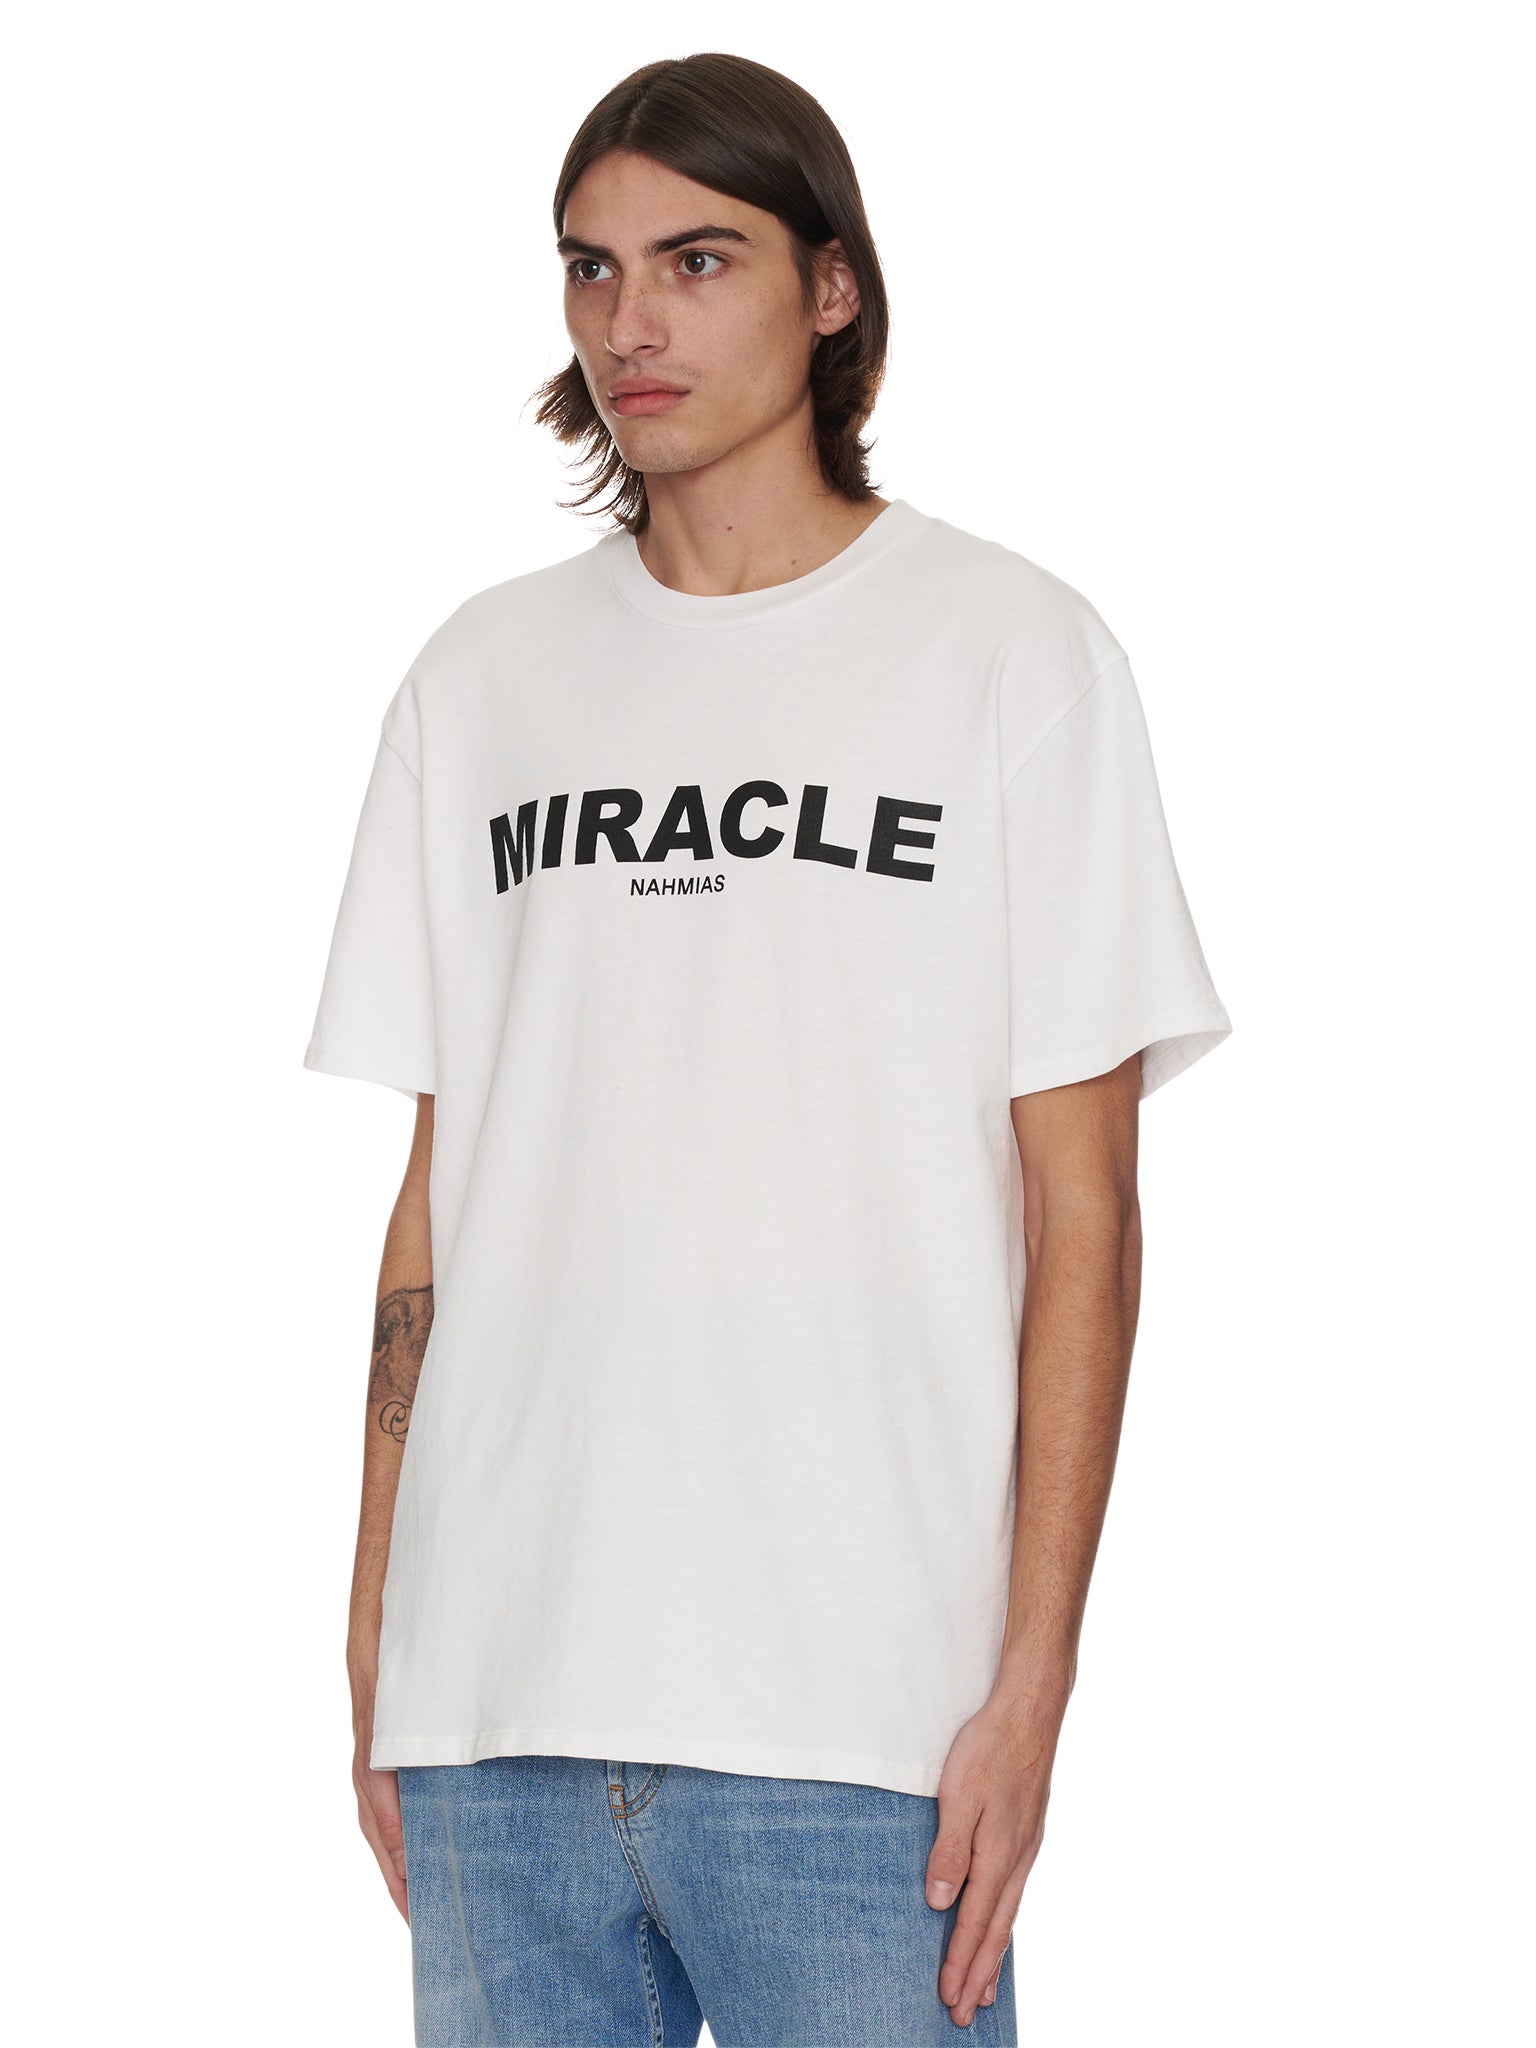 Miracle T Shirt